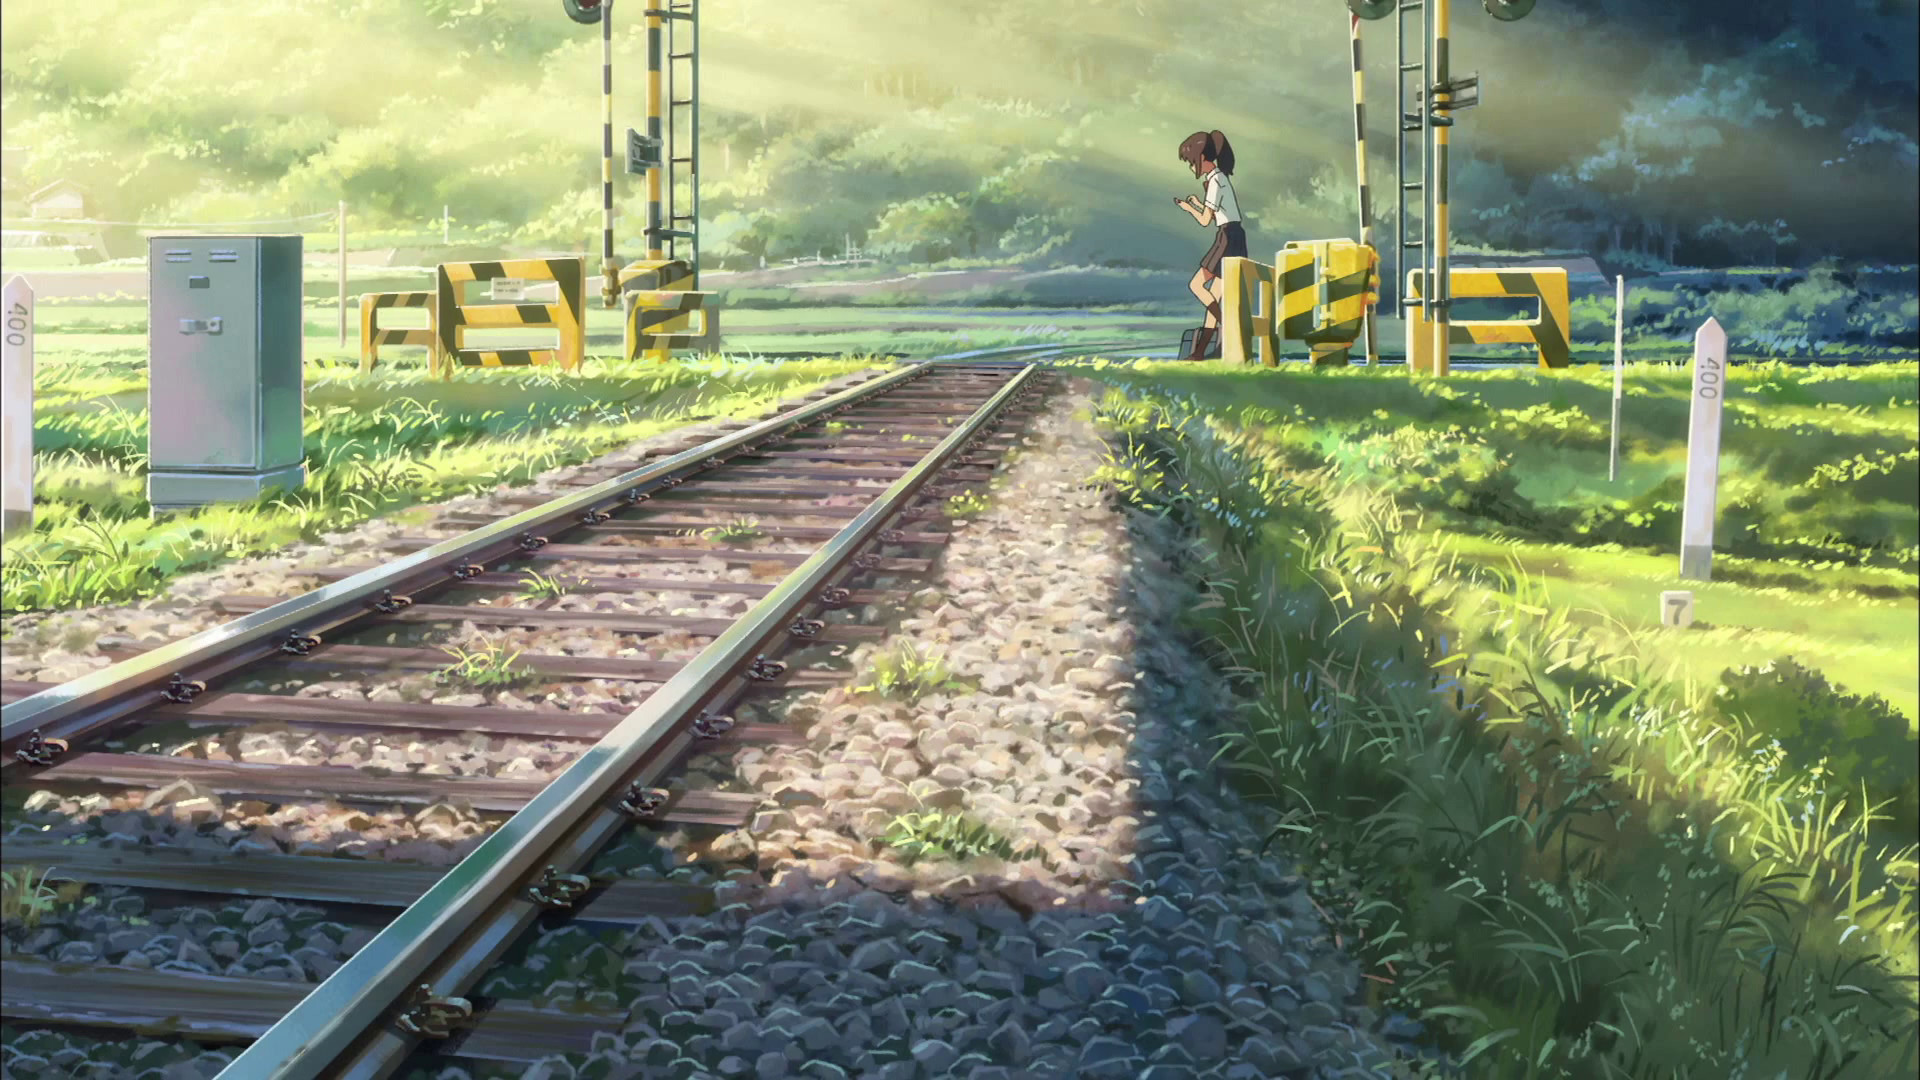 1920x1080 åã®åã¯ã (Kimino Na Wa - your name) - Makoto Shinkai | Makoto Shinkai |  Pinterest | Anime scenery, Anime and Animation